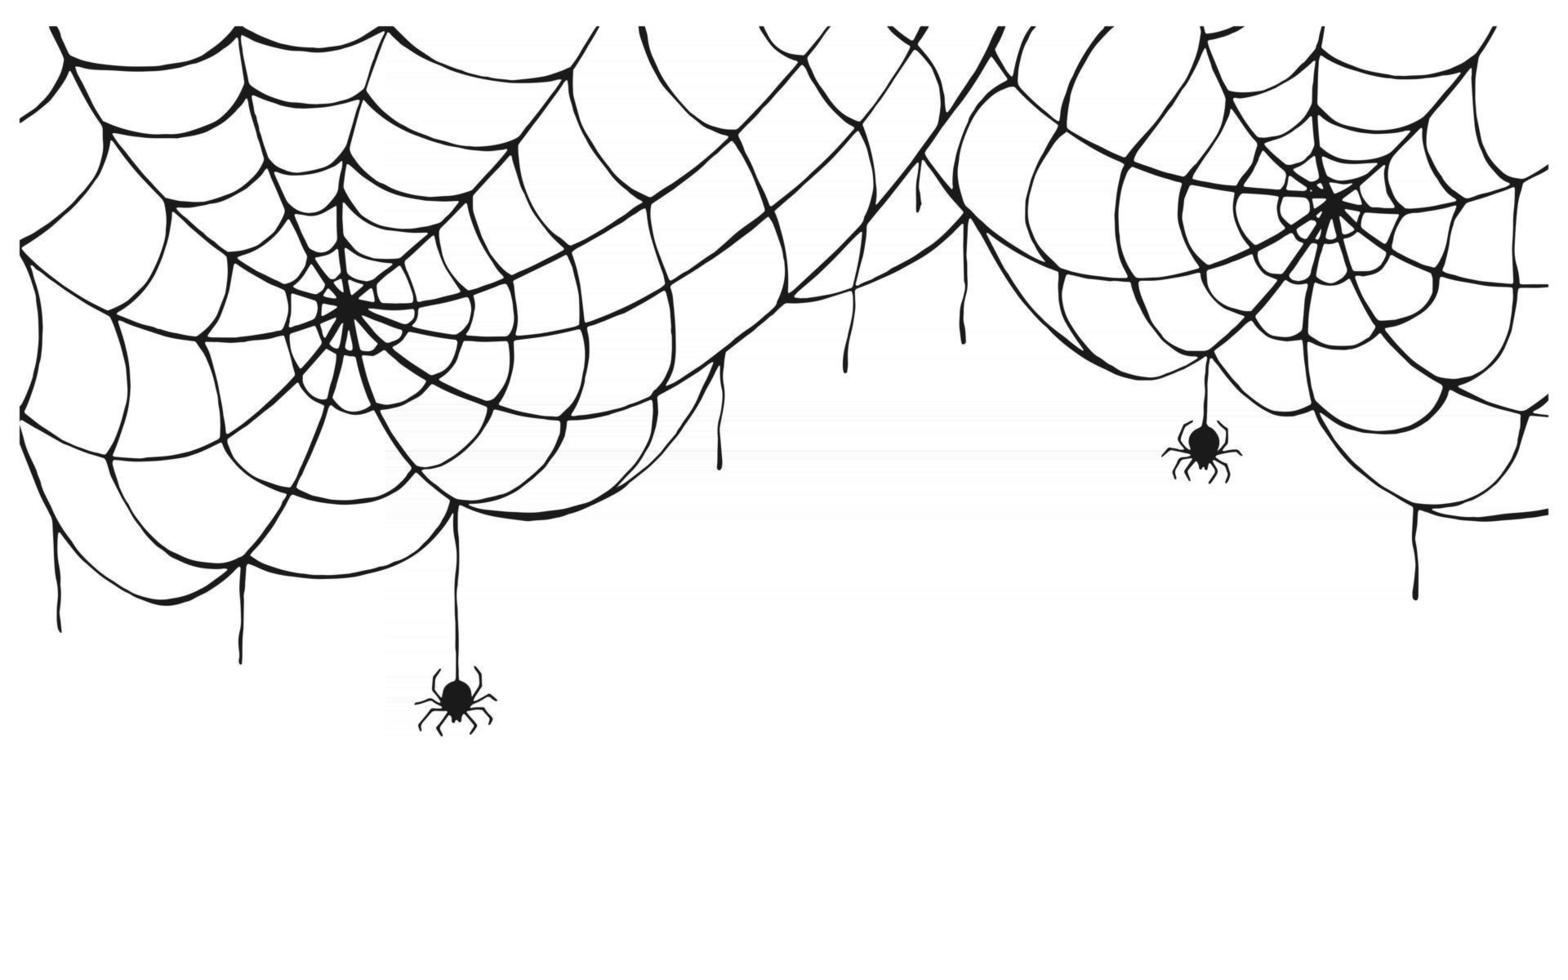 sfondo di ragnatela. ragnatela spaventosa con ragno spettrale, isolato su sfondo bianco. disegnato a mano. decorazioni di halloween, modello di vettore di disegno del tatuaggio di trama netta.